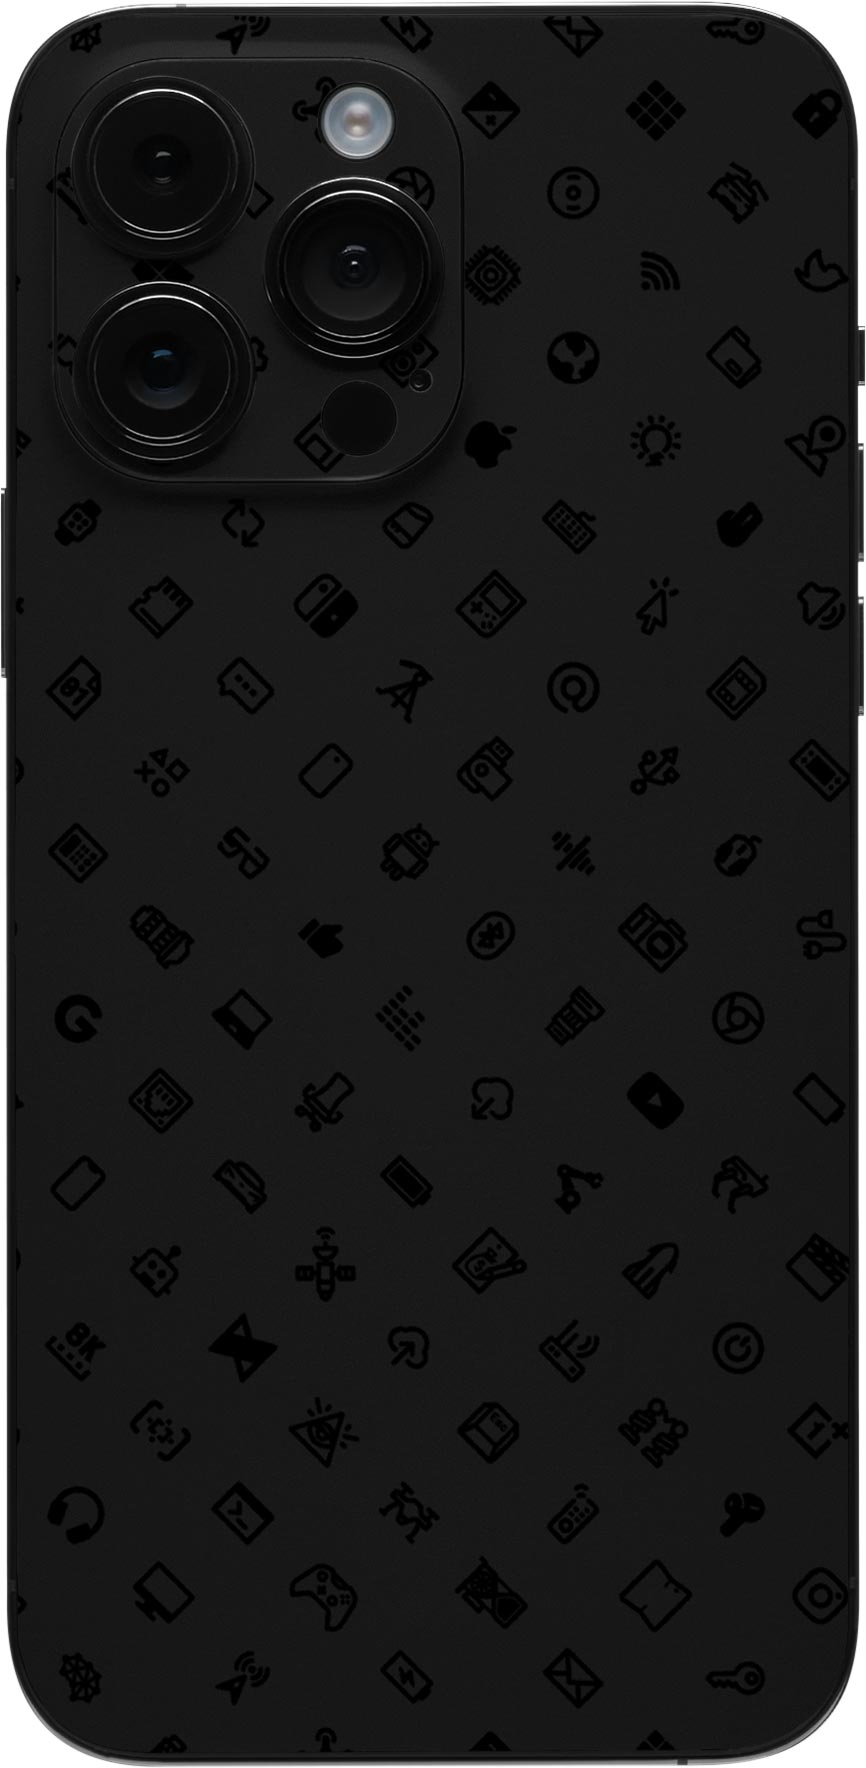 iPhone 12 Pro Max Slim Case Louis Vuitton Orange